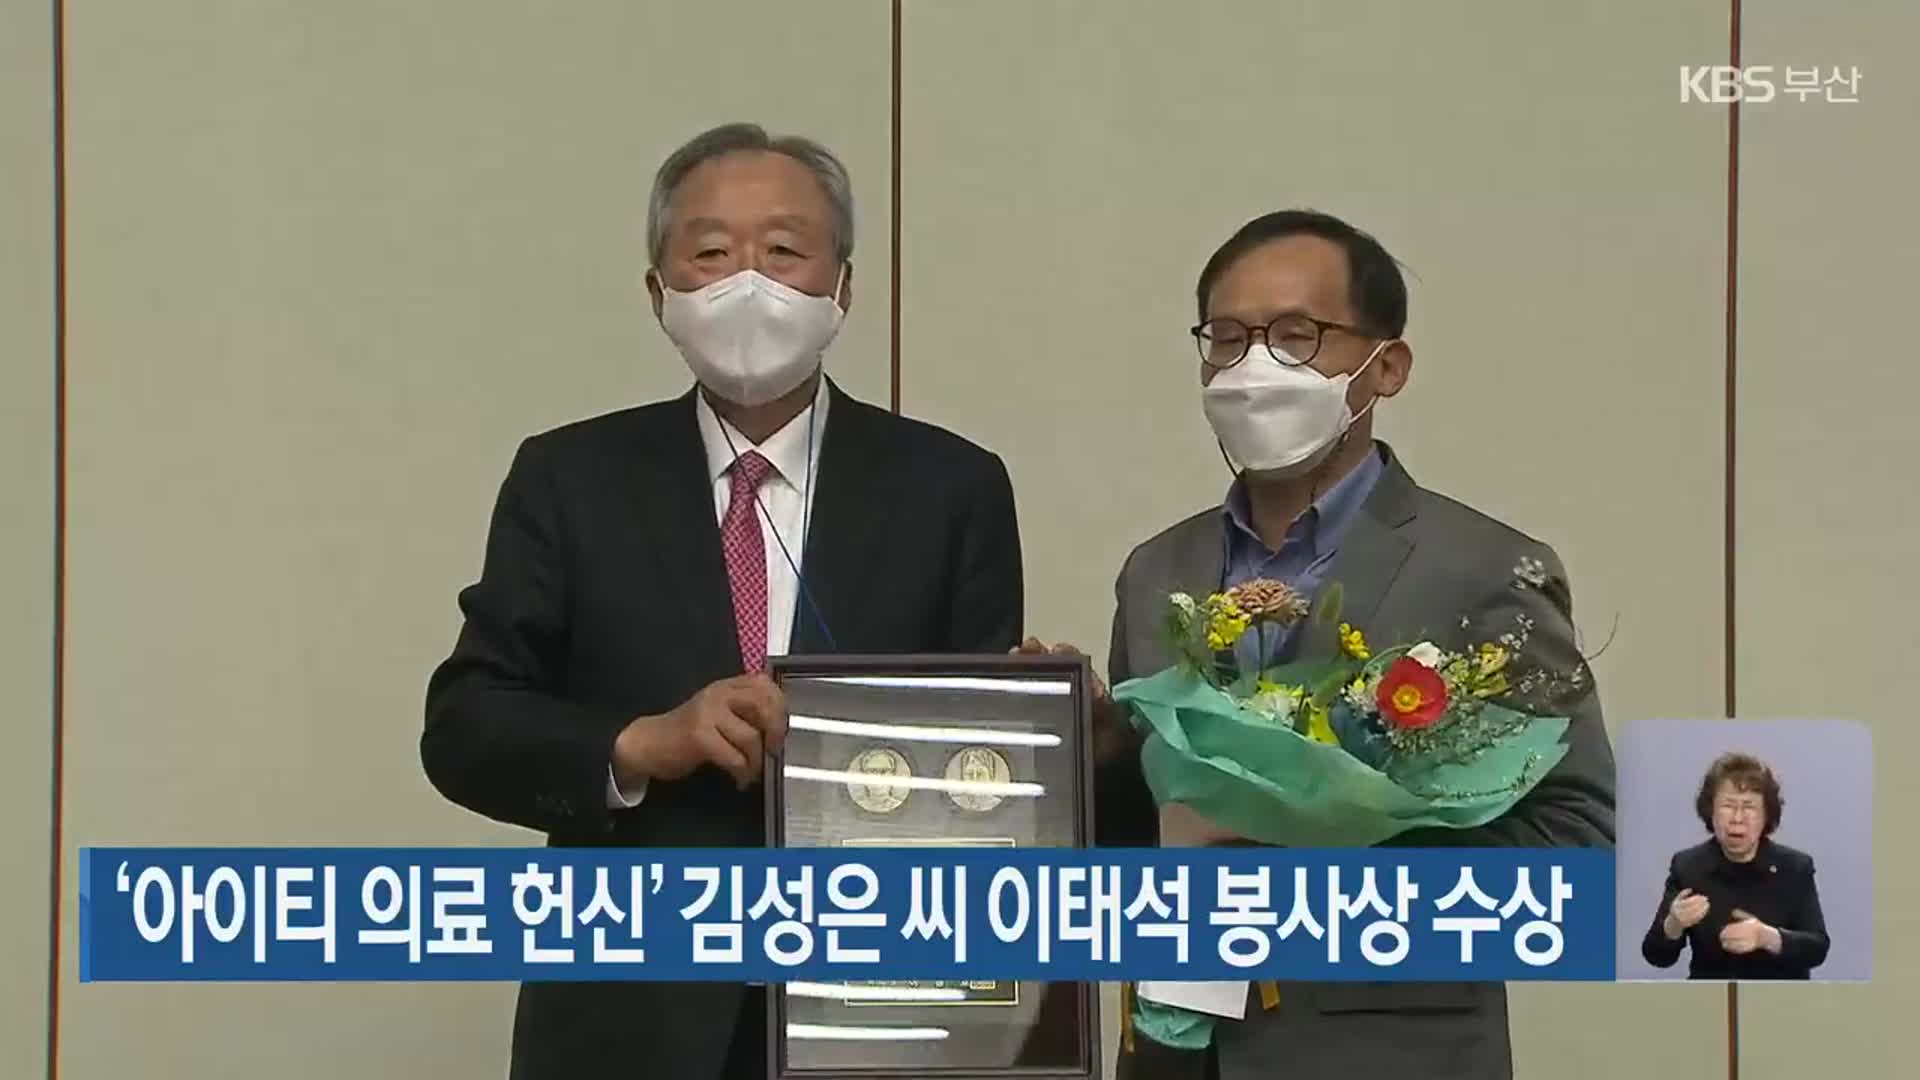 ‘아이티 의료 헌신’ 김성은 씨 이태석 봉사상 수상